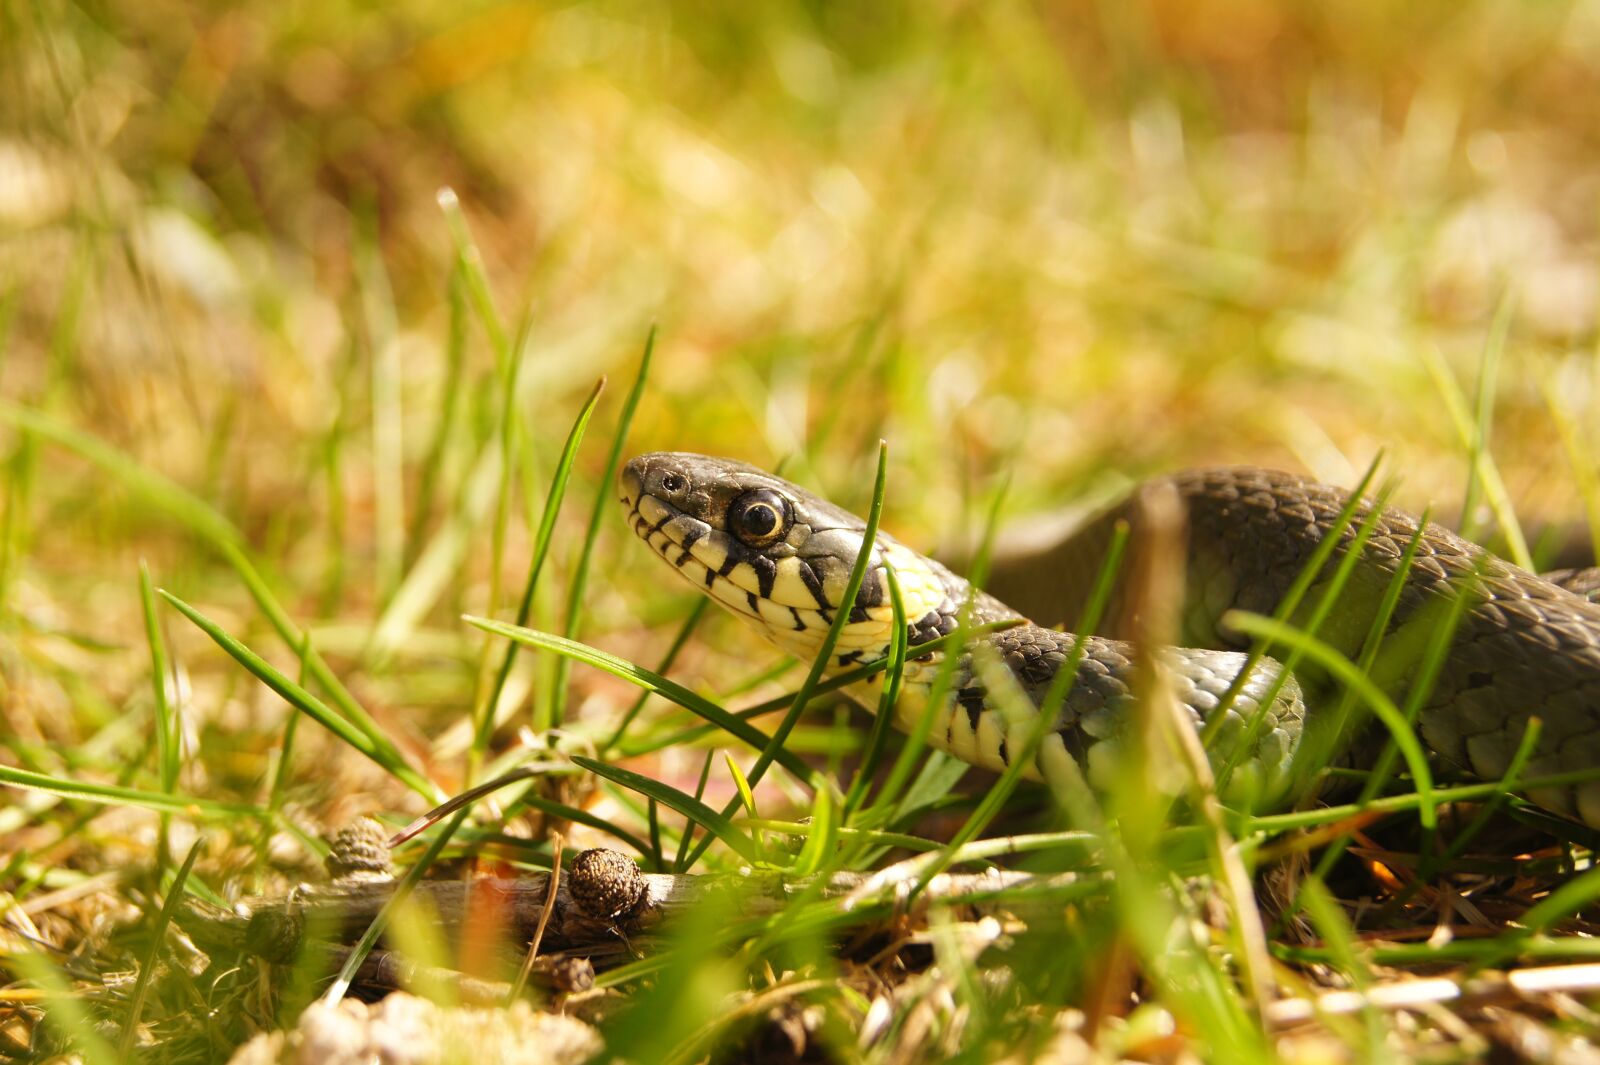 Sony SLT-A33 sample photo. Snake, grass snake, gad photography